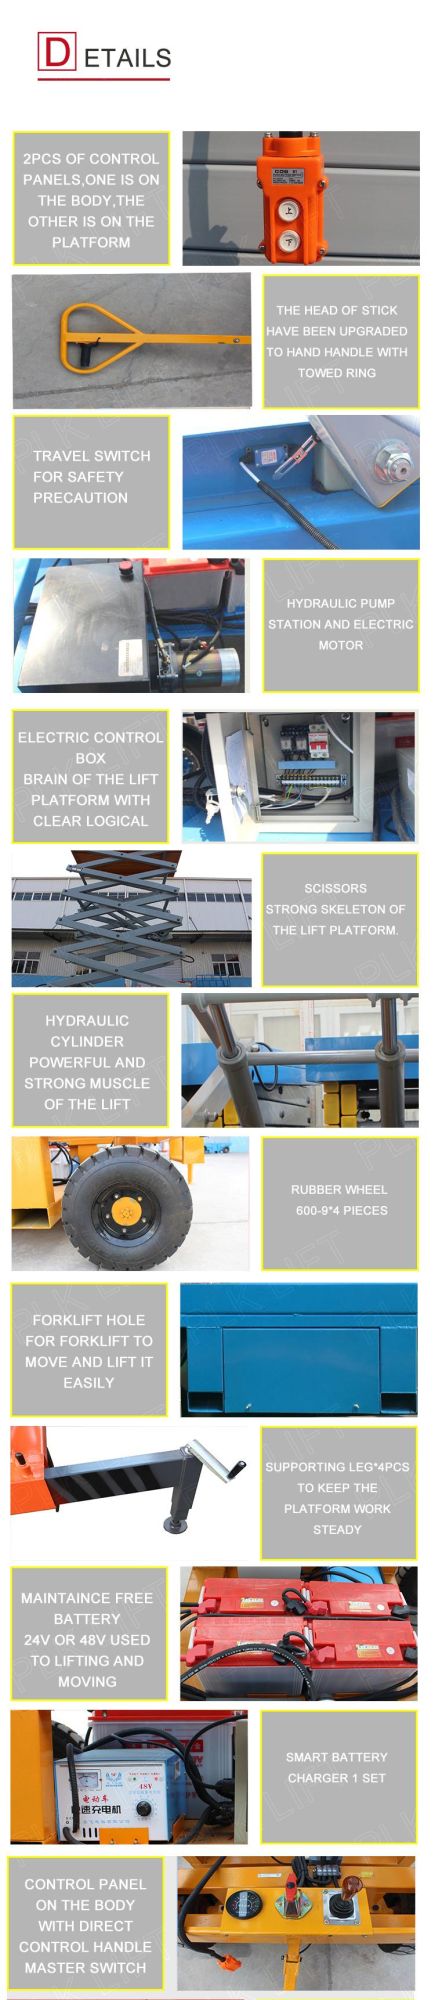 300kg 18m Multi Platform Level Moving Working Platform